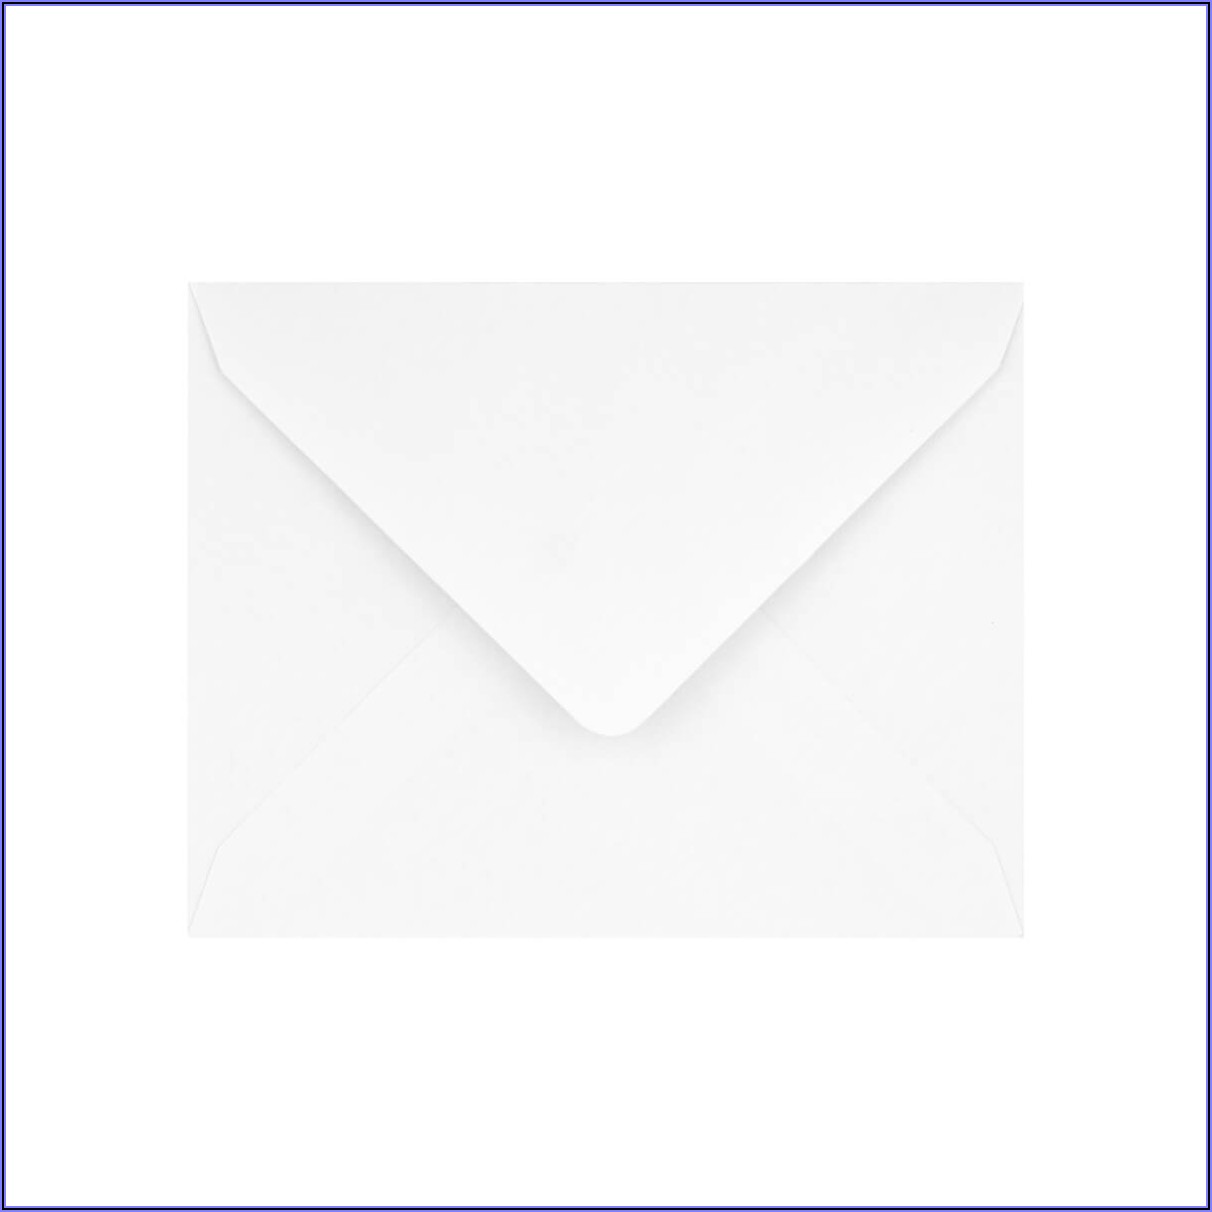 5x7 Envelopes In Mm